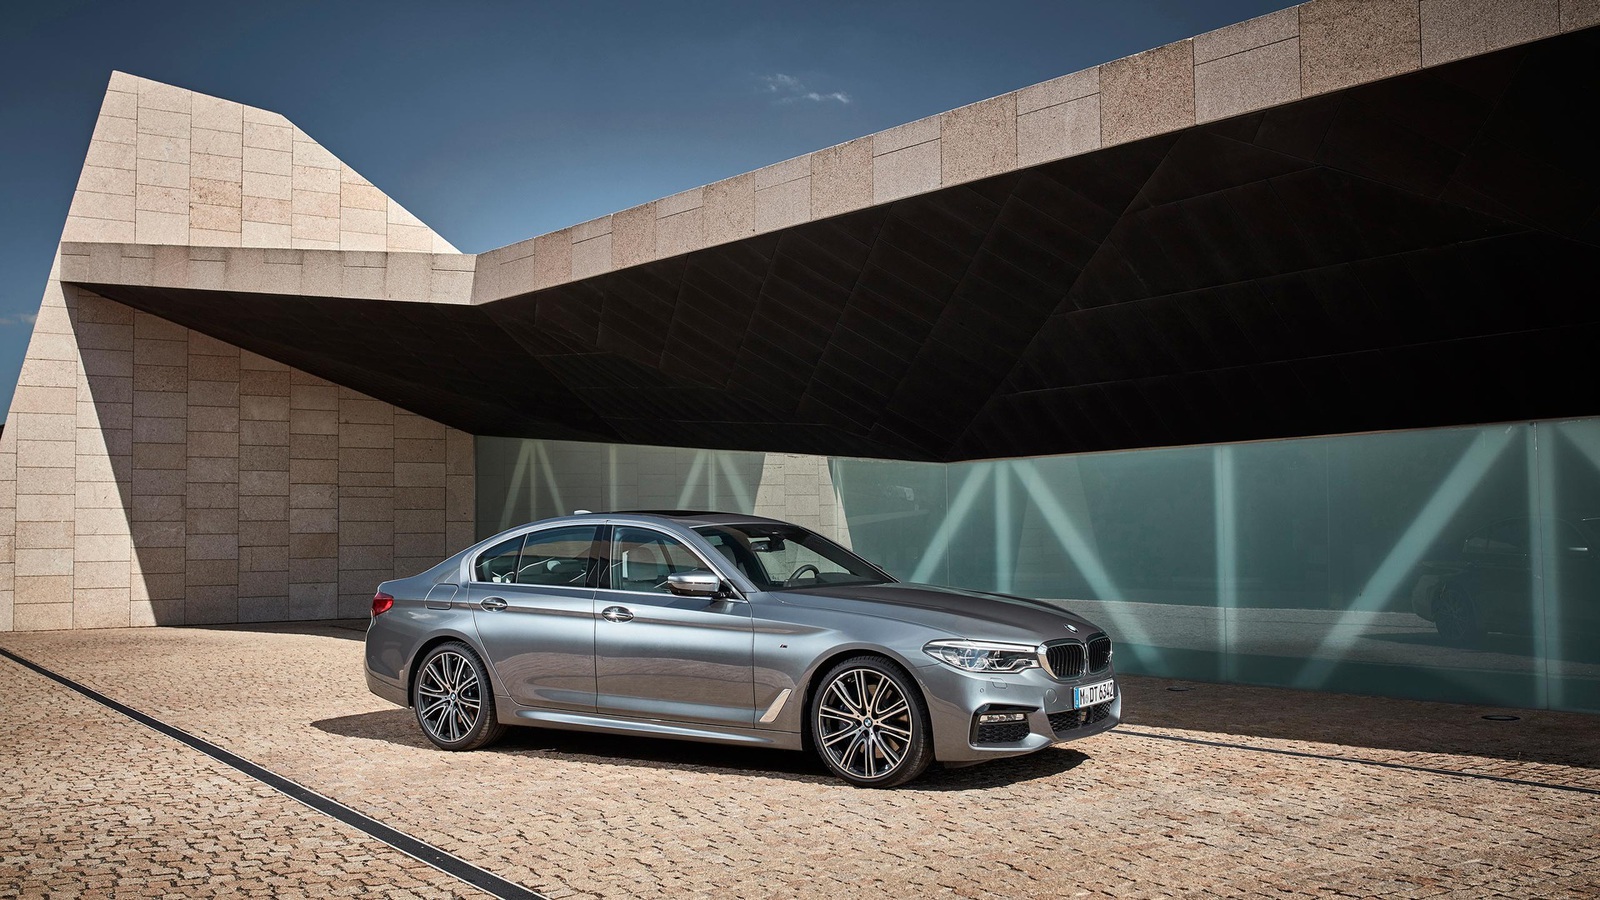 BMW 5-Series Touring 2017-2018 – обновление универсала 5 серии. Бмв 5 новый кузов